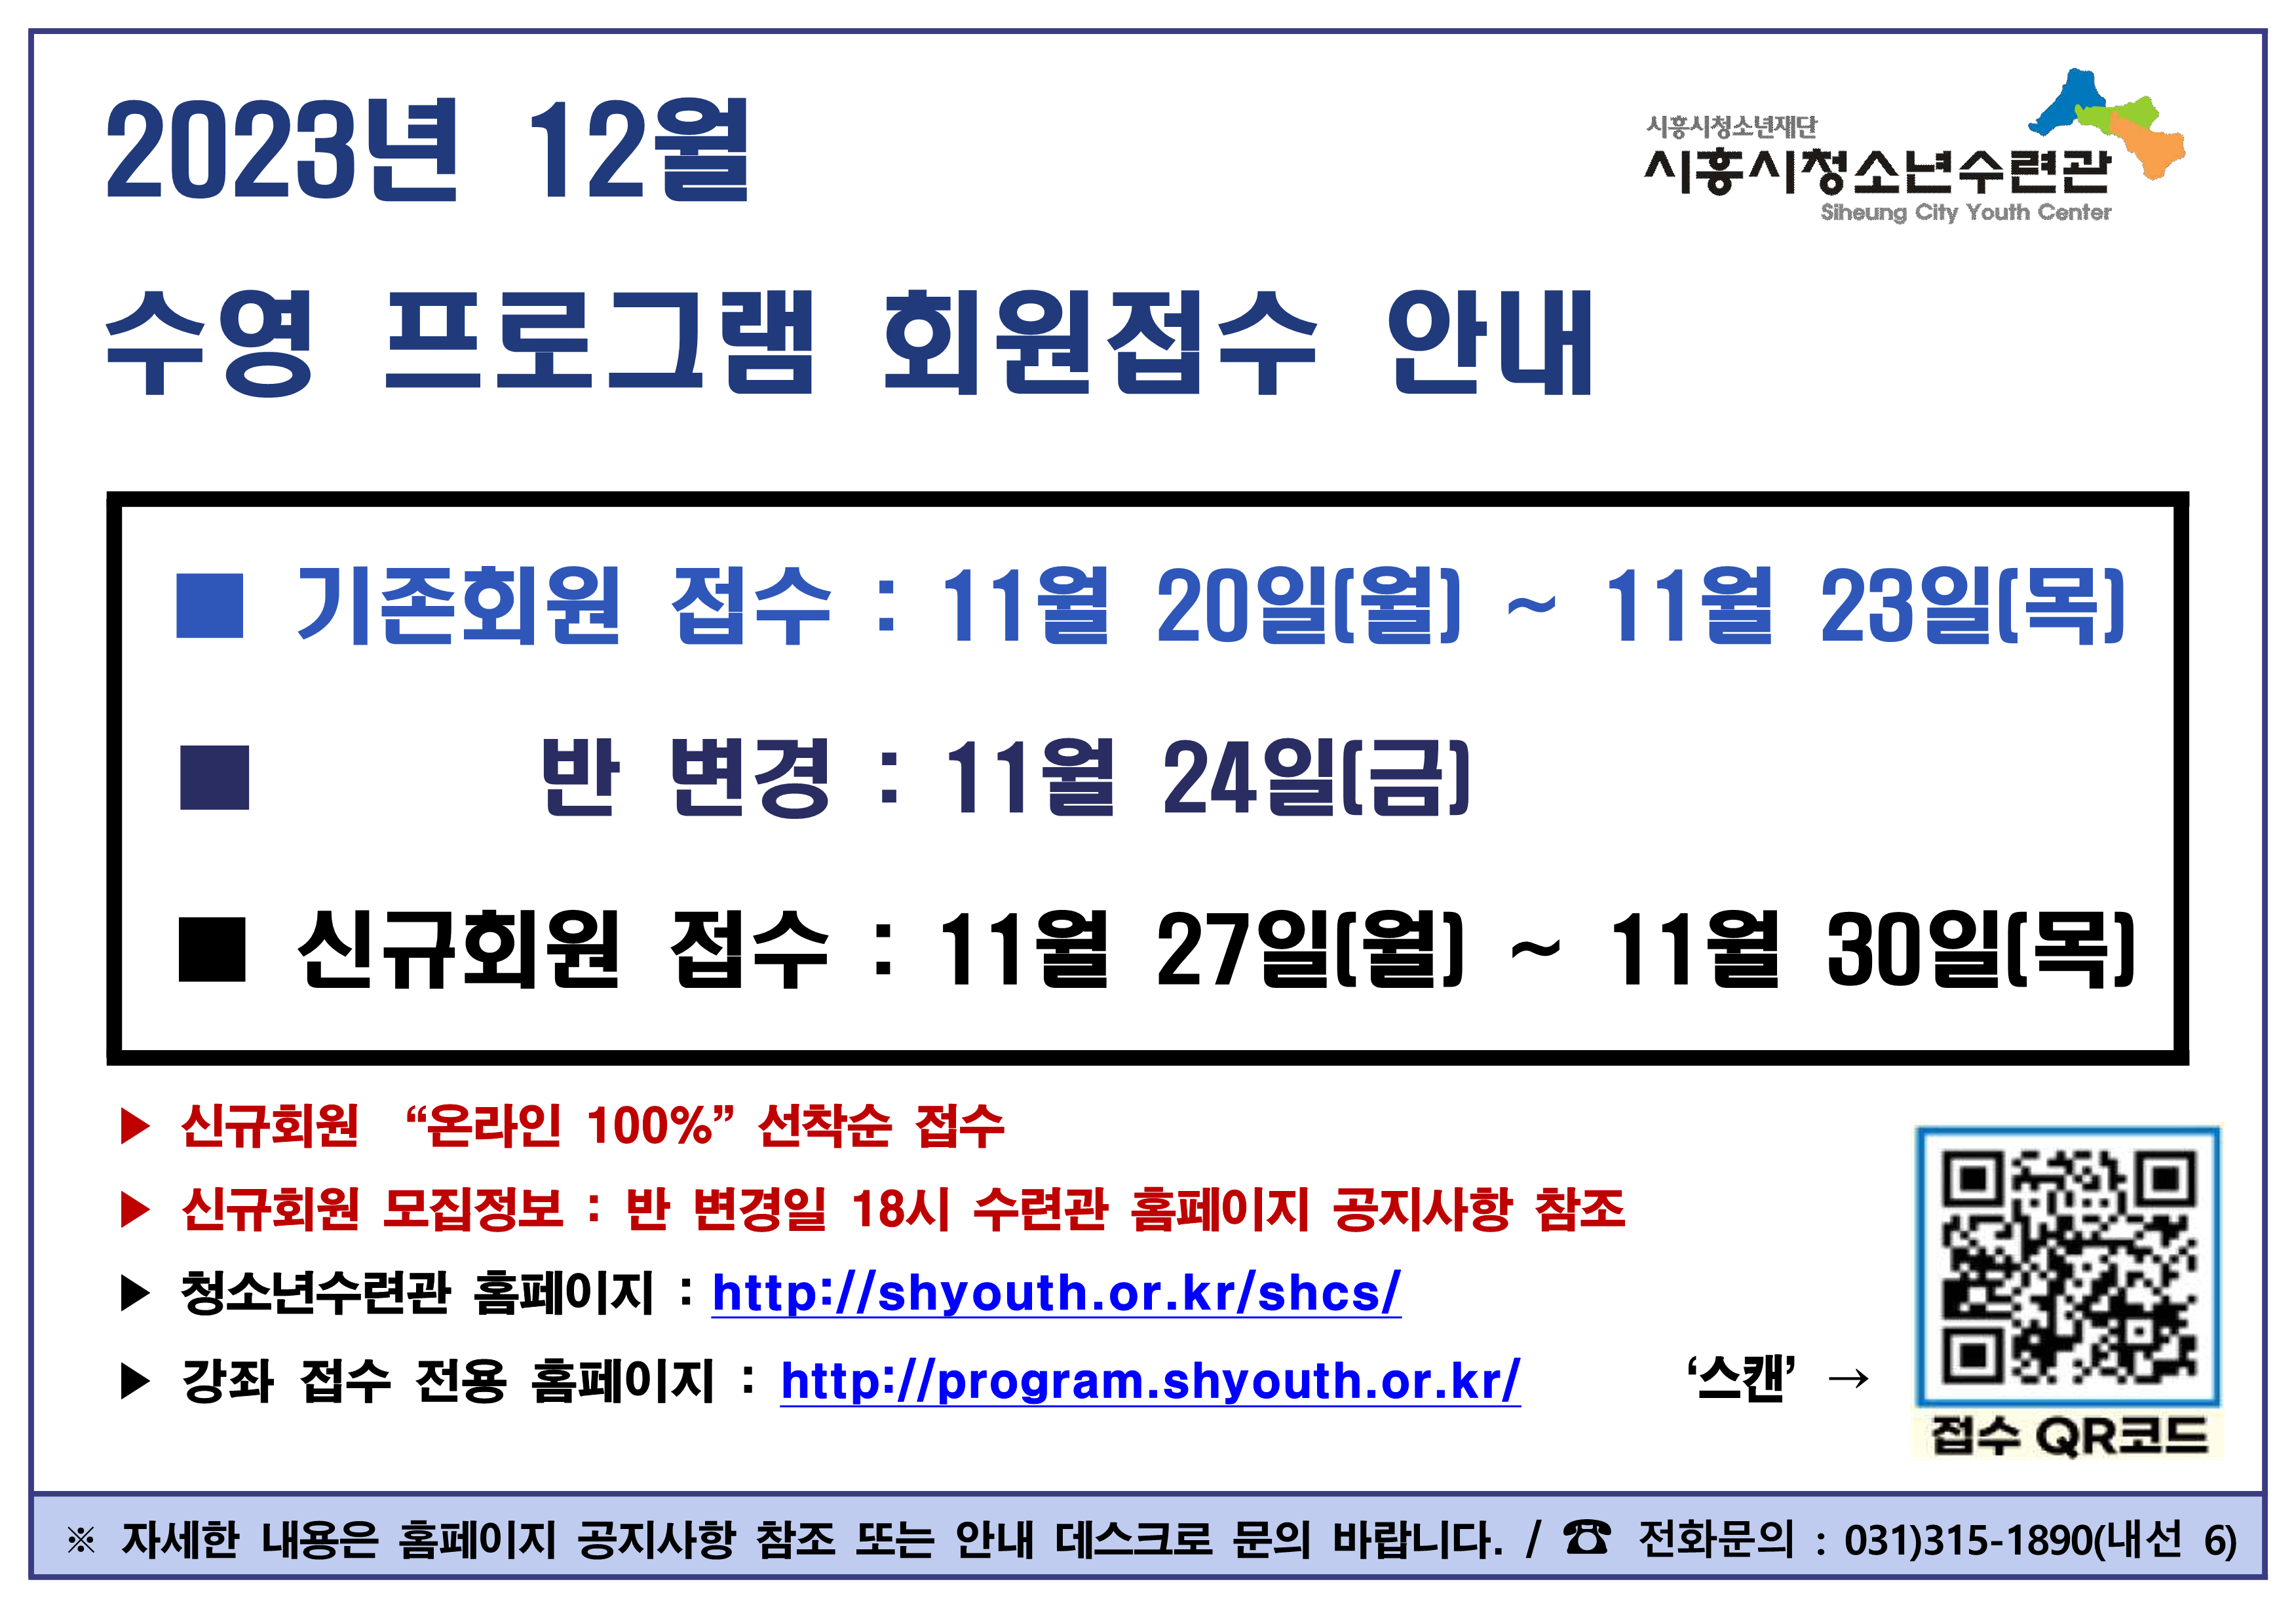 기존접수 배너(23년 12월)_1.png